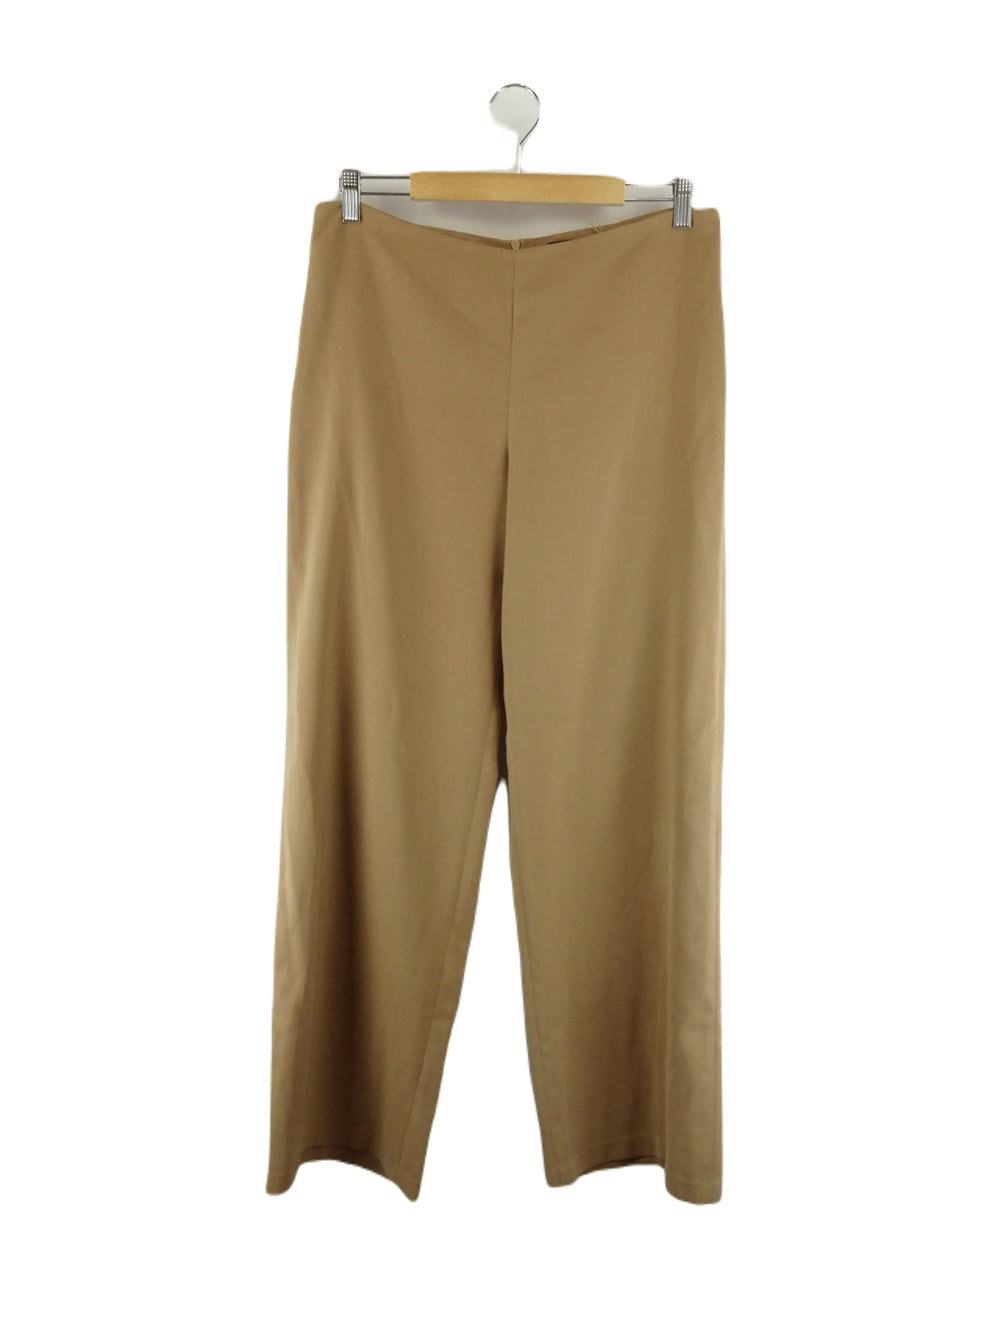 Zimmermann Vintage Brown Pants 14